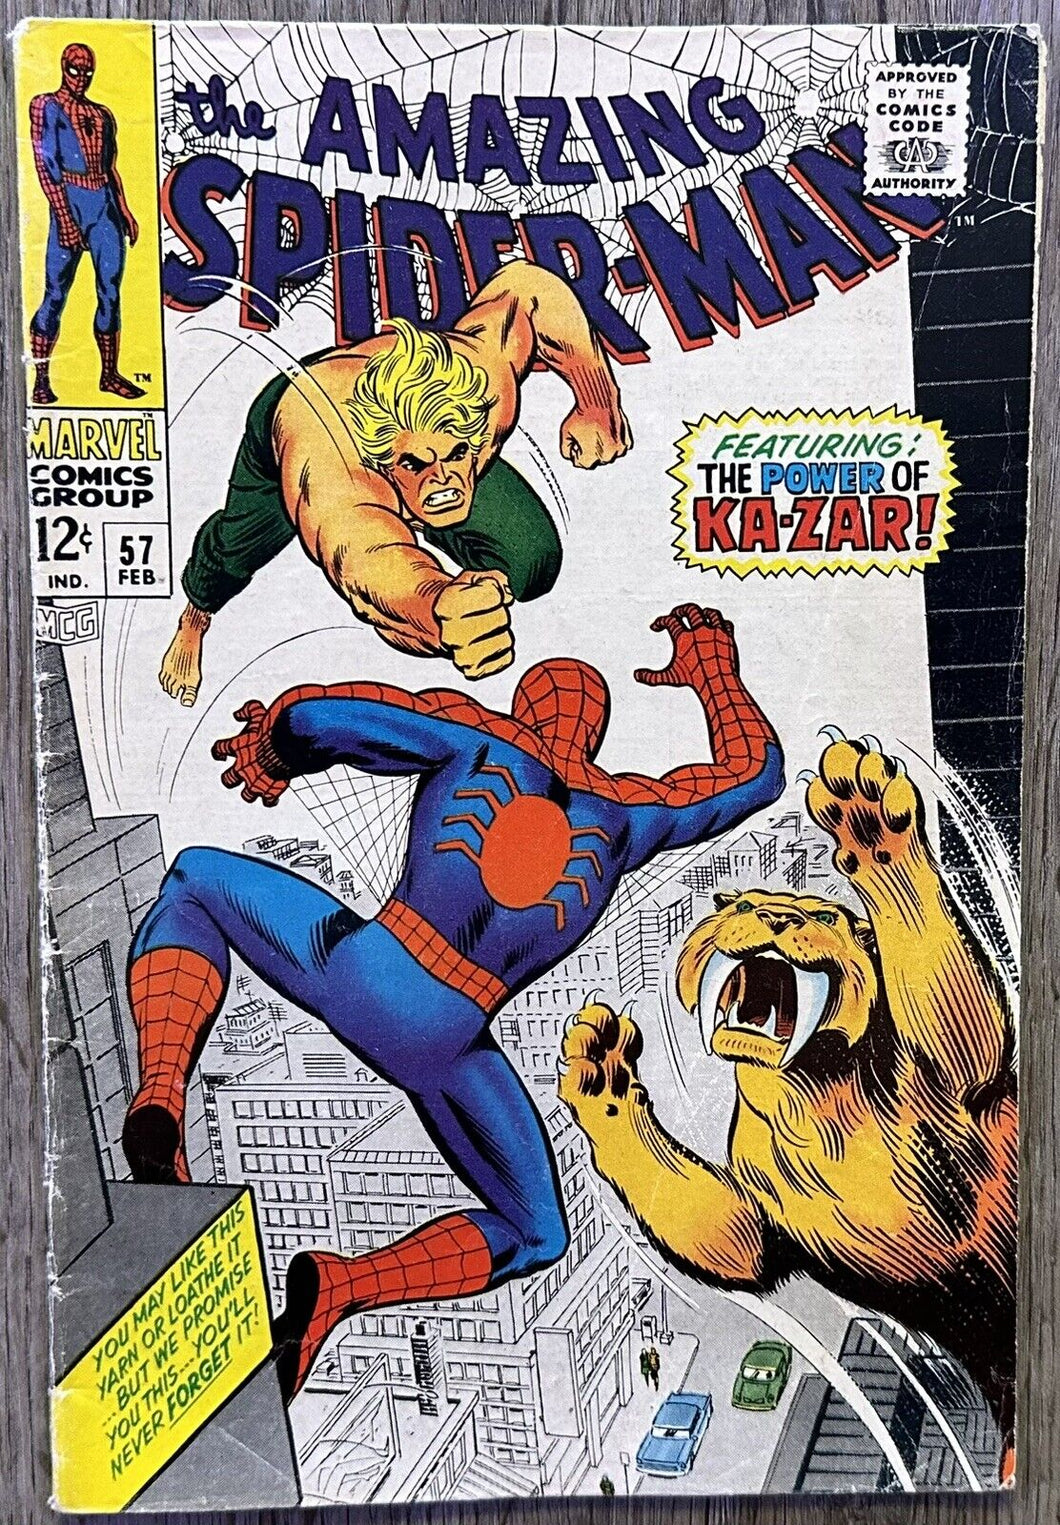 THE AMAZING SPIDER-MAN #57 (MARVEL,1968) Ka-Zar appearance.